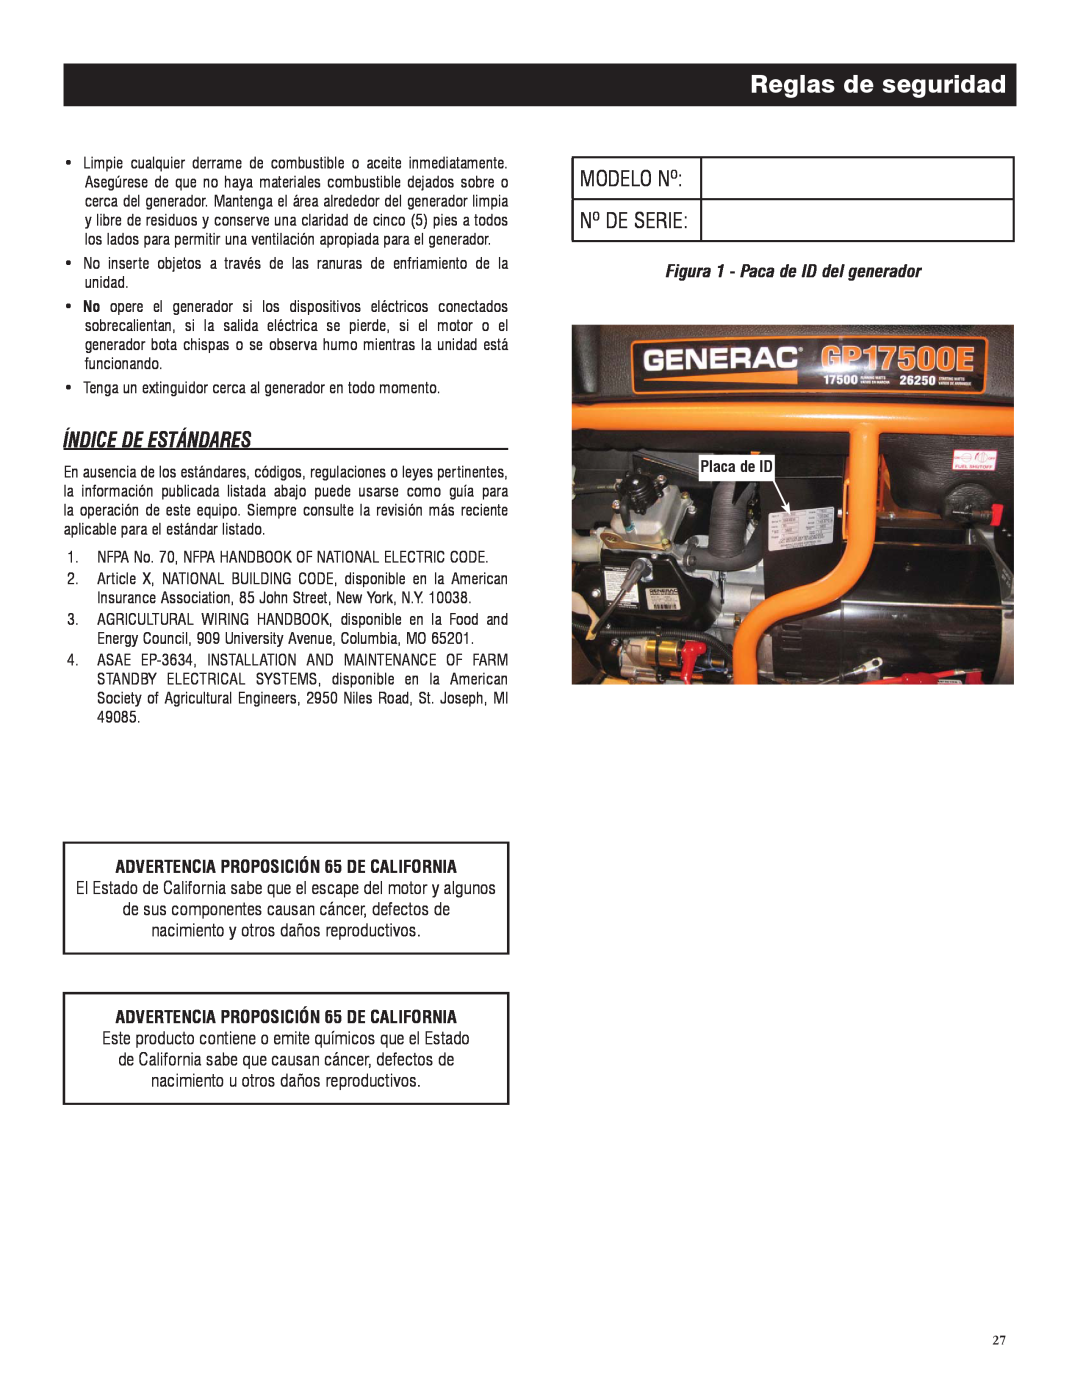 Generac 005735-0 Índice De Estándares, Modelo Nº Nº De Serie, Reglas de seguridad, Figura 1 - Paca de ID del generador 